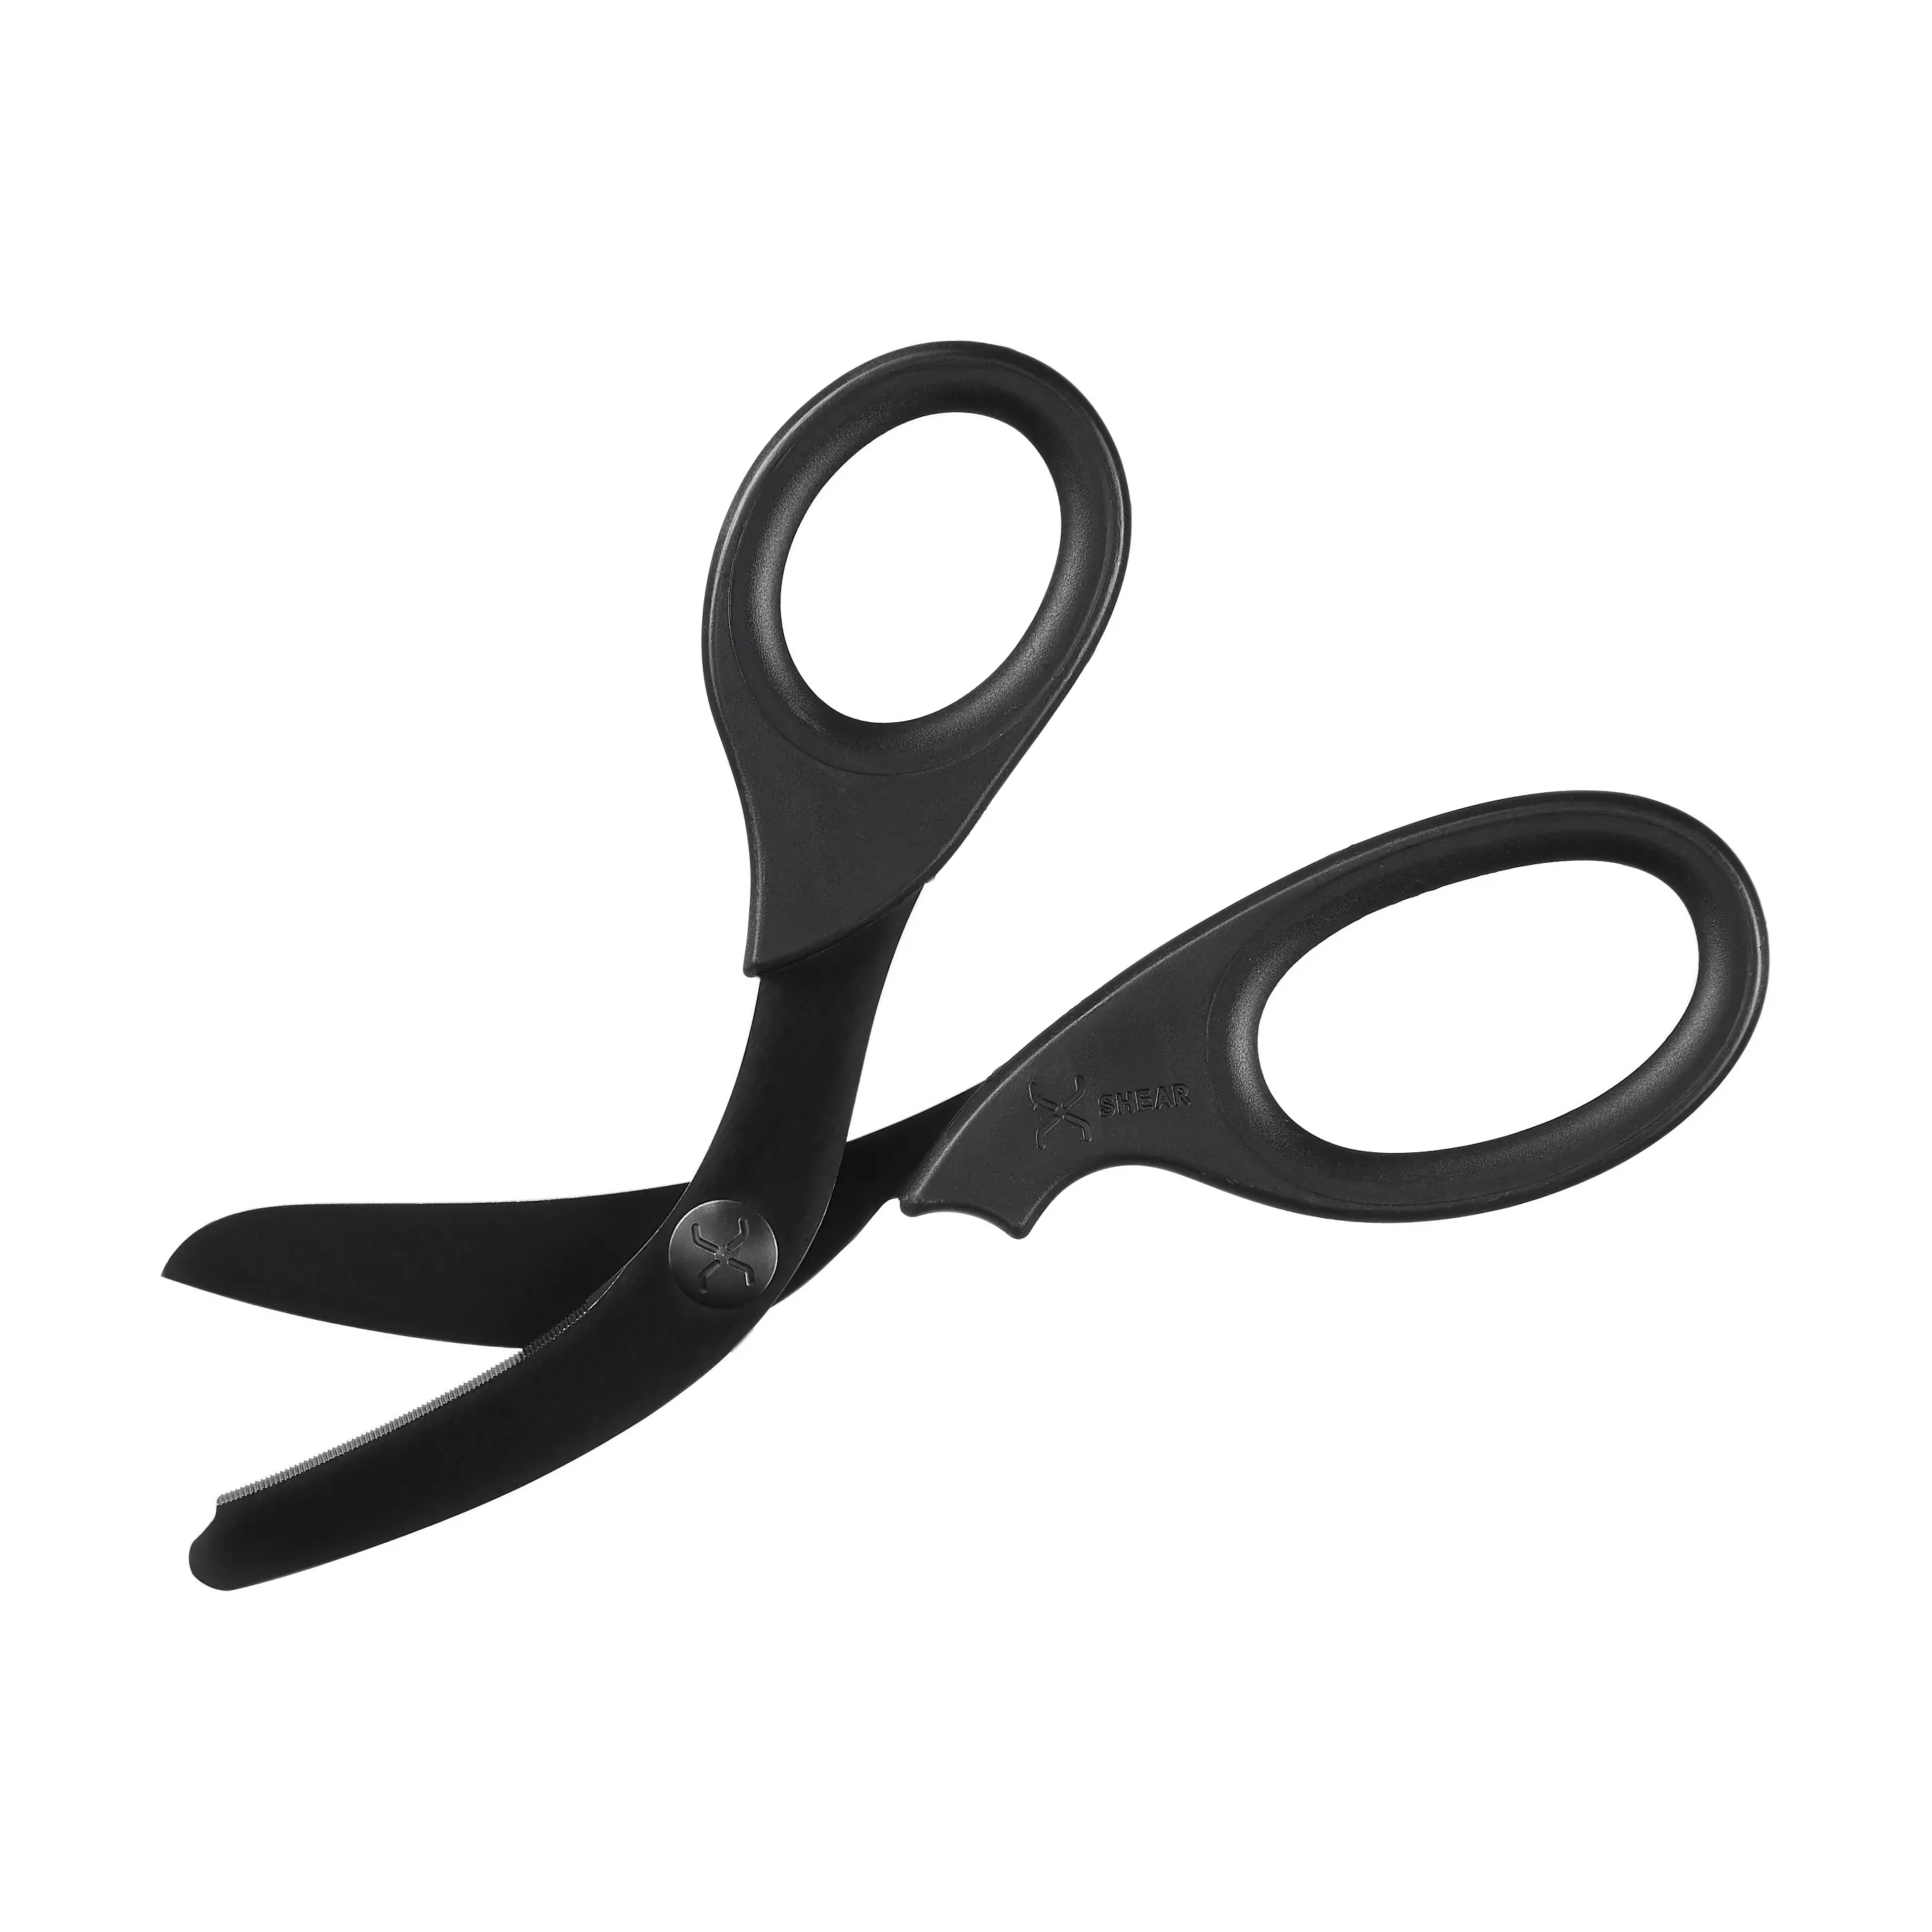 Trauma scissors XSHEAR® - Black